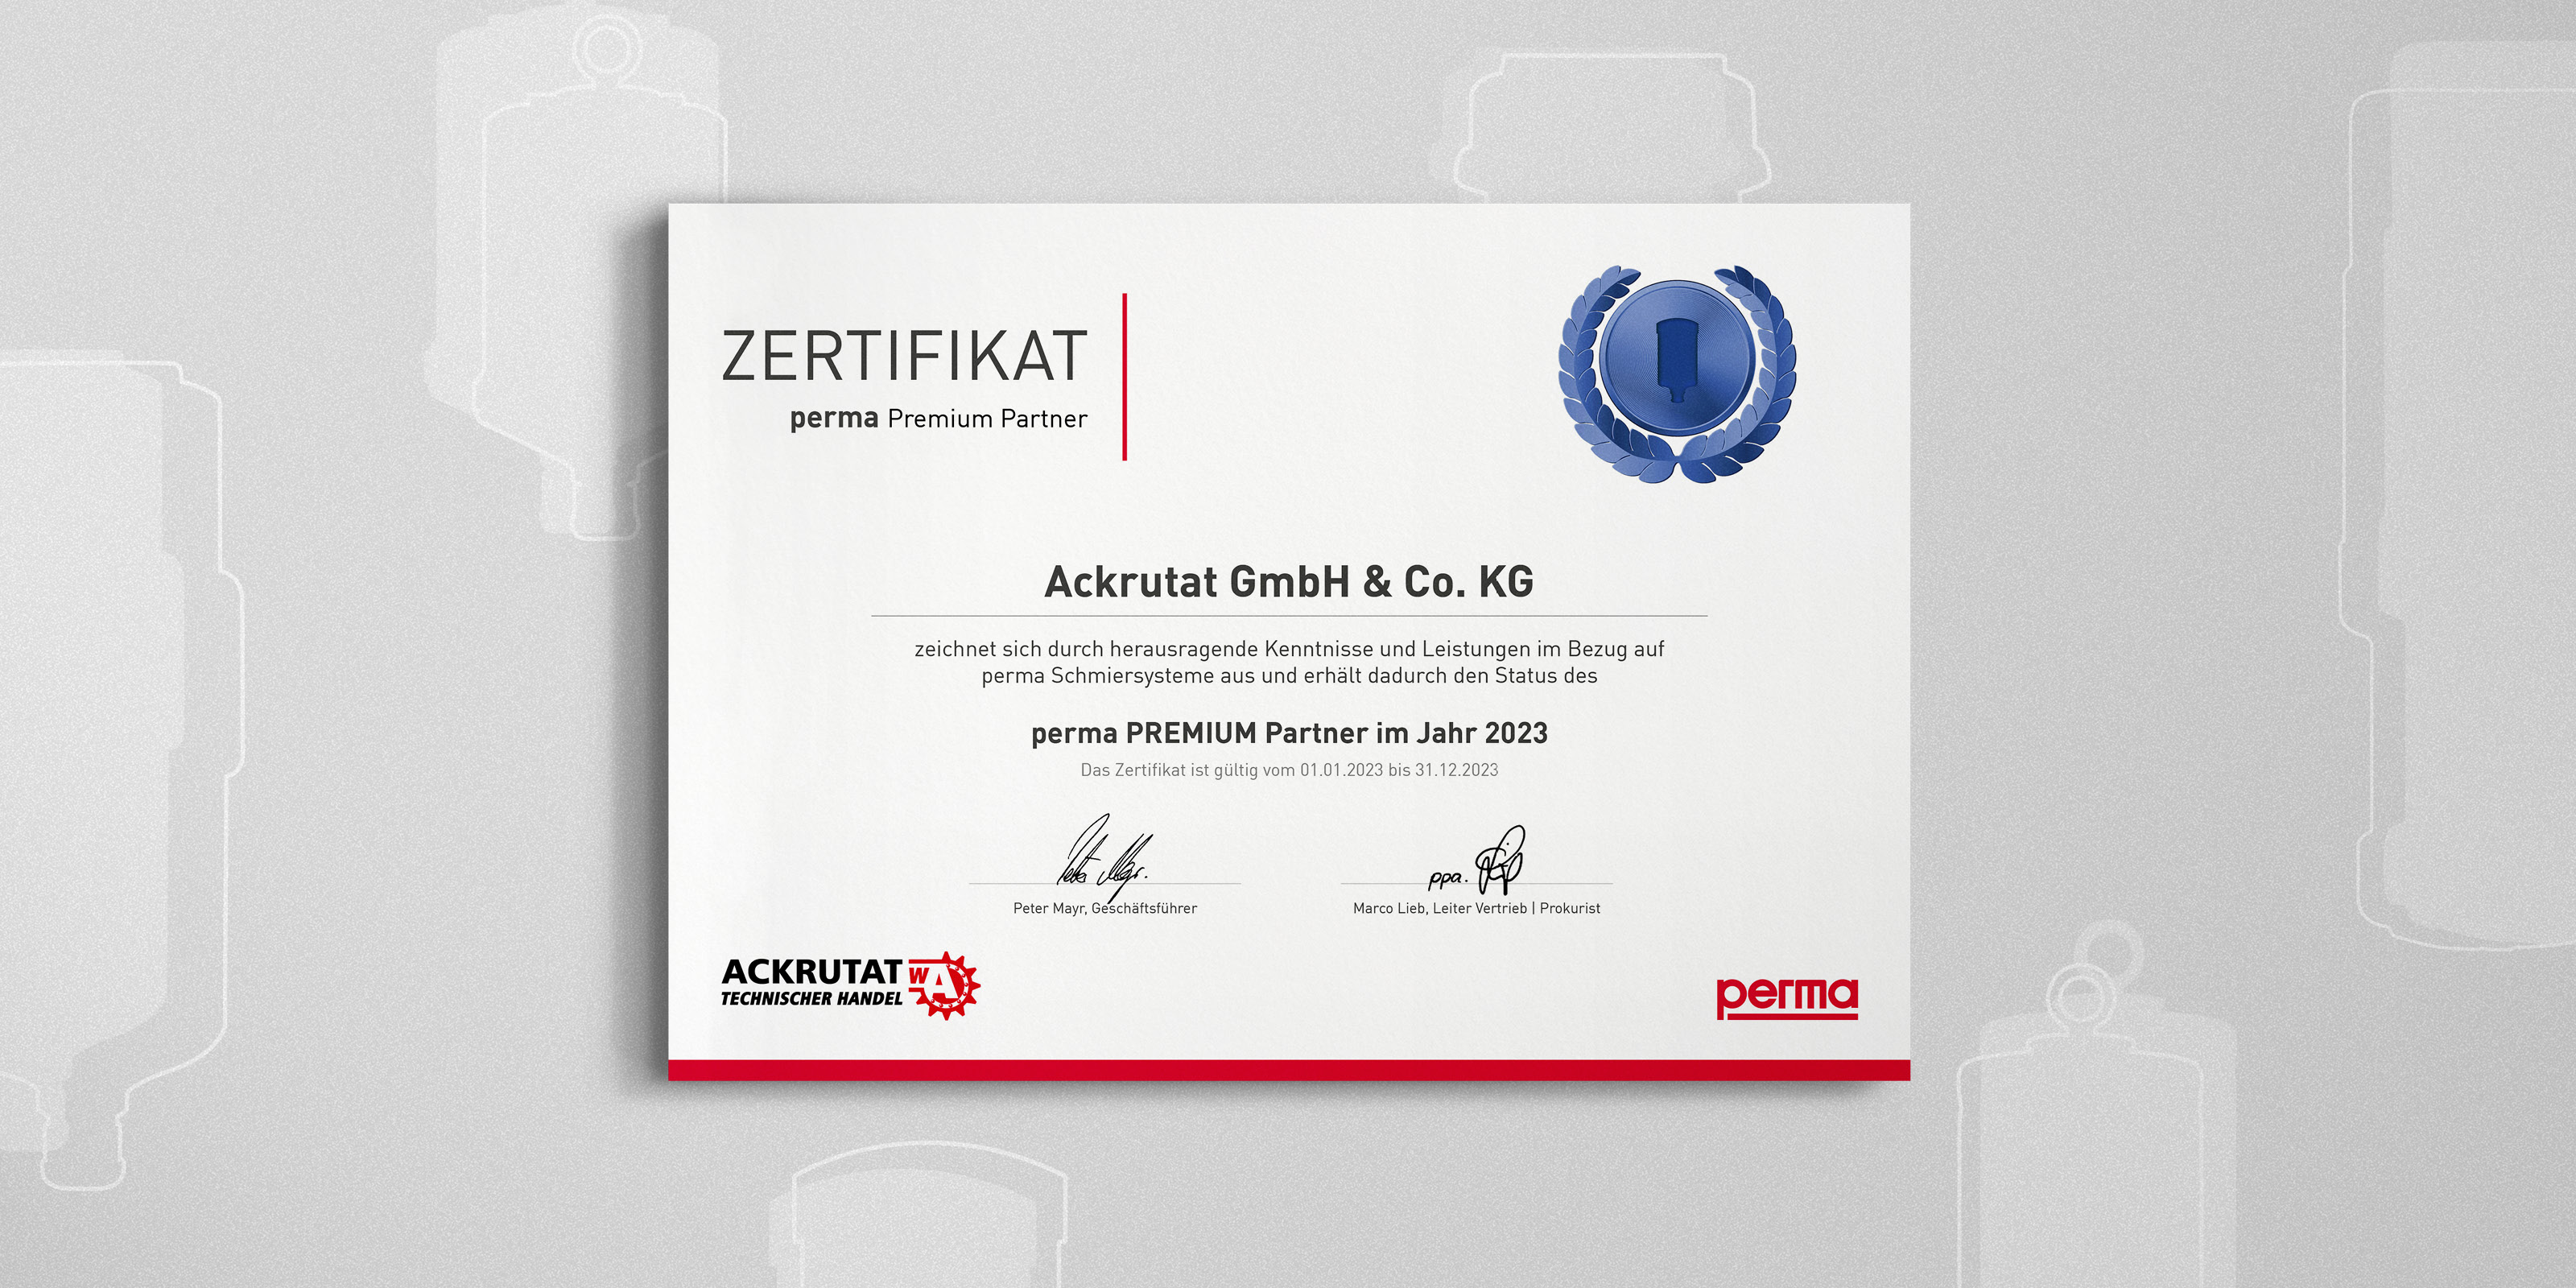 perma Zertifikat | perma Premium Partner Ackrutat GmbH & Co.KG zeichnet sich durch herausragende Kenntnisse und Leistungen im Bezug auf perma Schmiersysteme aus und erhält dadurch den Status des perma PREMIUM Partner im Jahr 2023. Das Zertifikat ist gültig vom 01.01.2023 bis 31.12.2023.